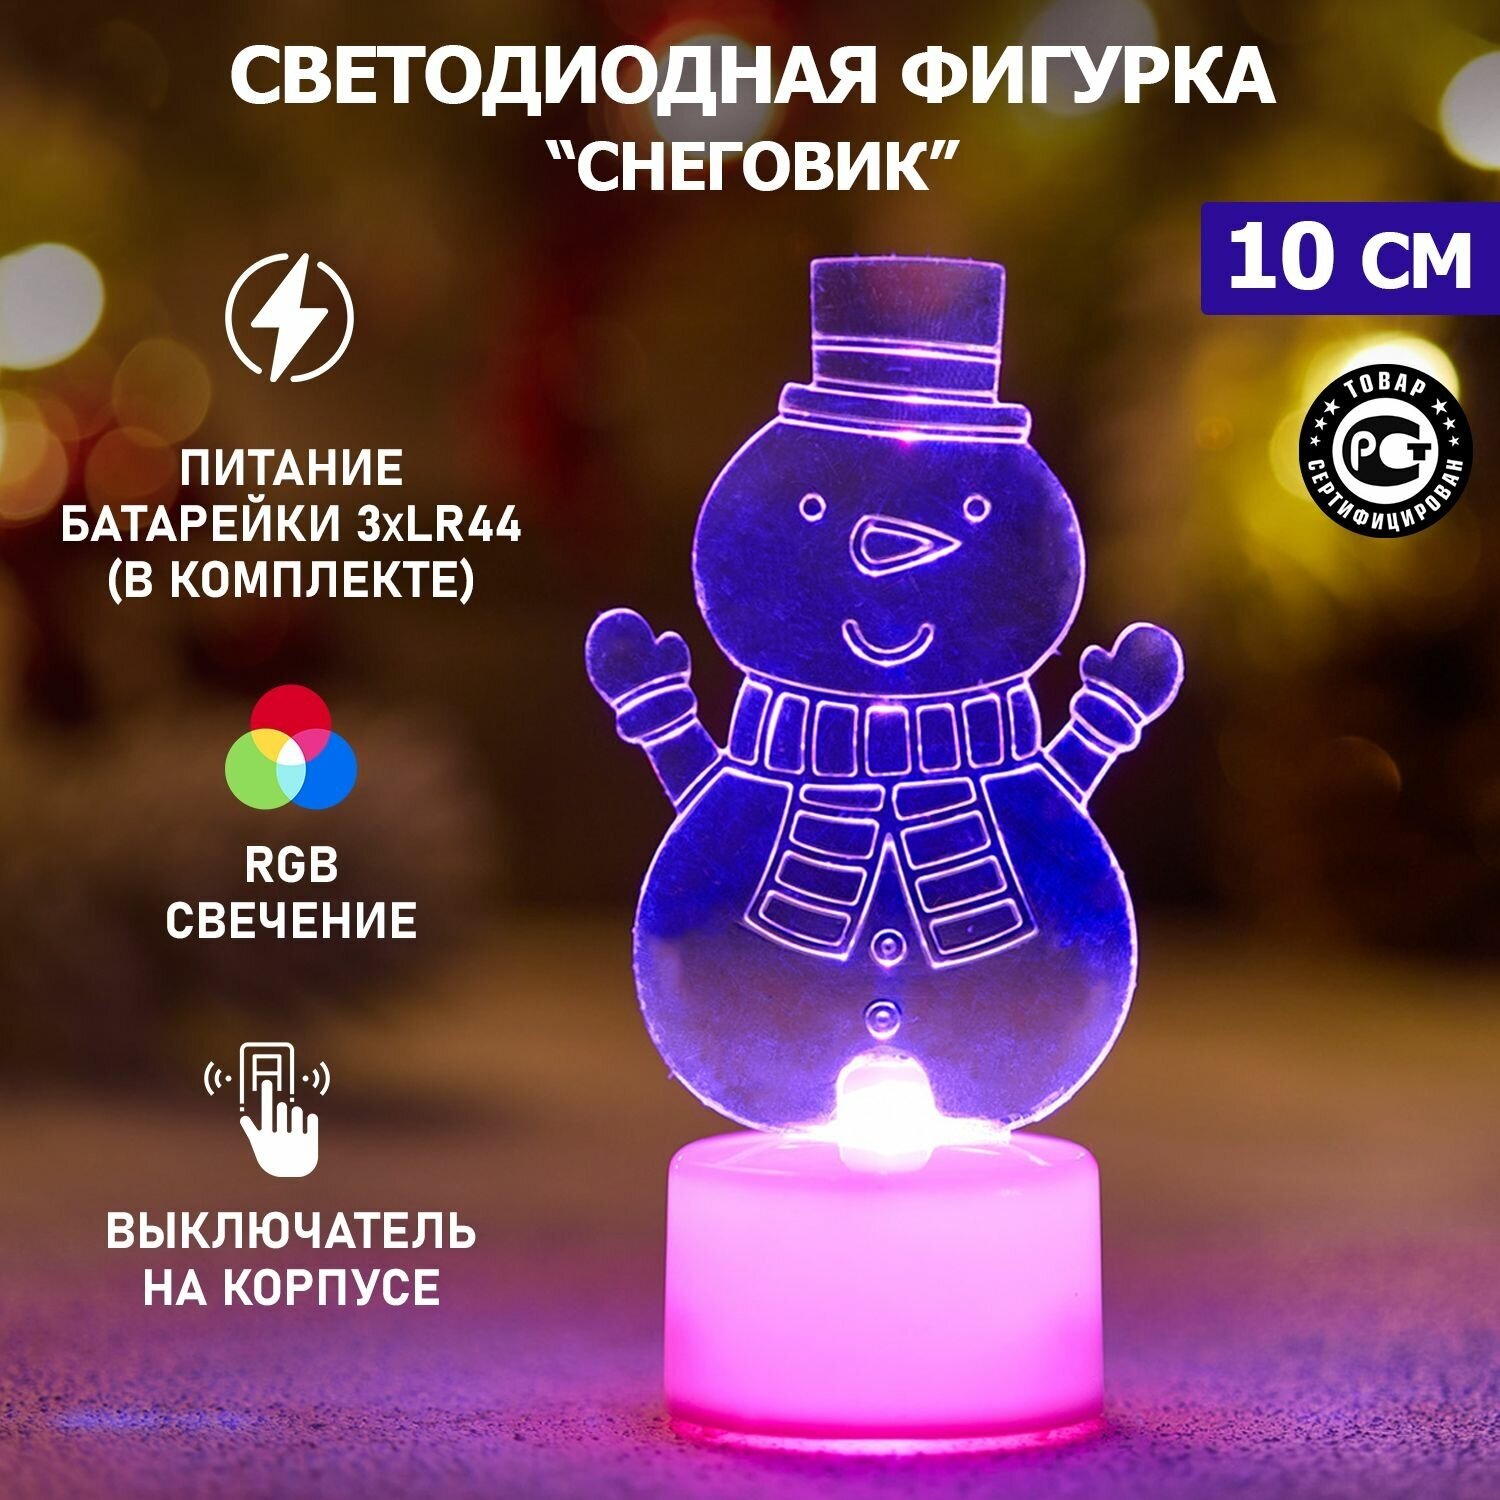 Светодиодная фигура "Снеговик с шарфом" со сменой цвета на подставке Neon-Night, 10 см